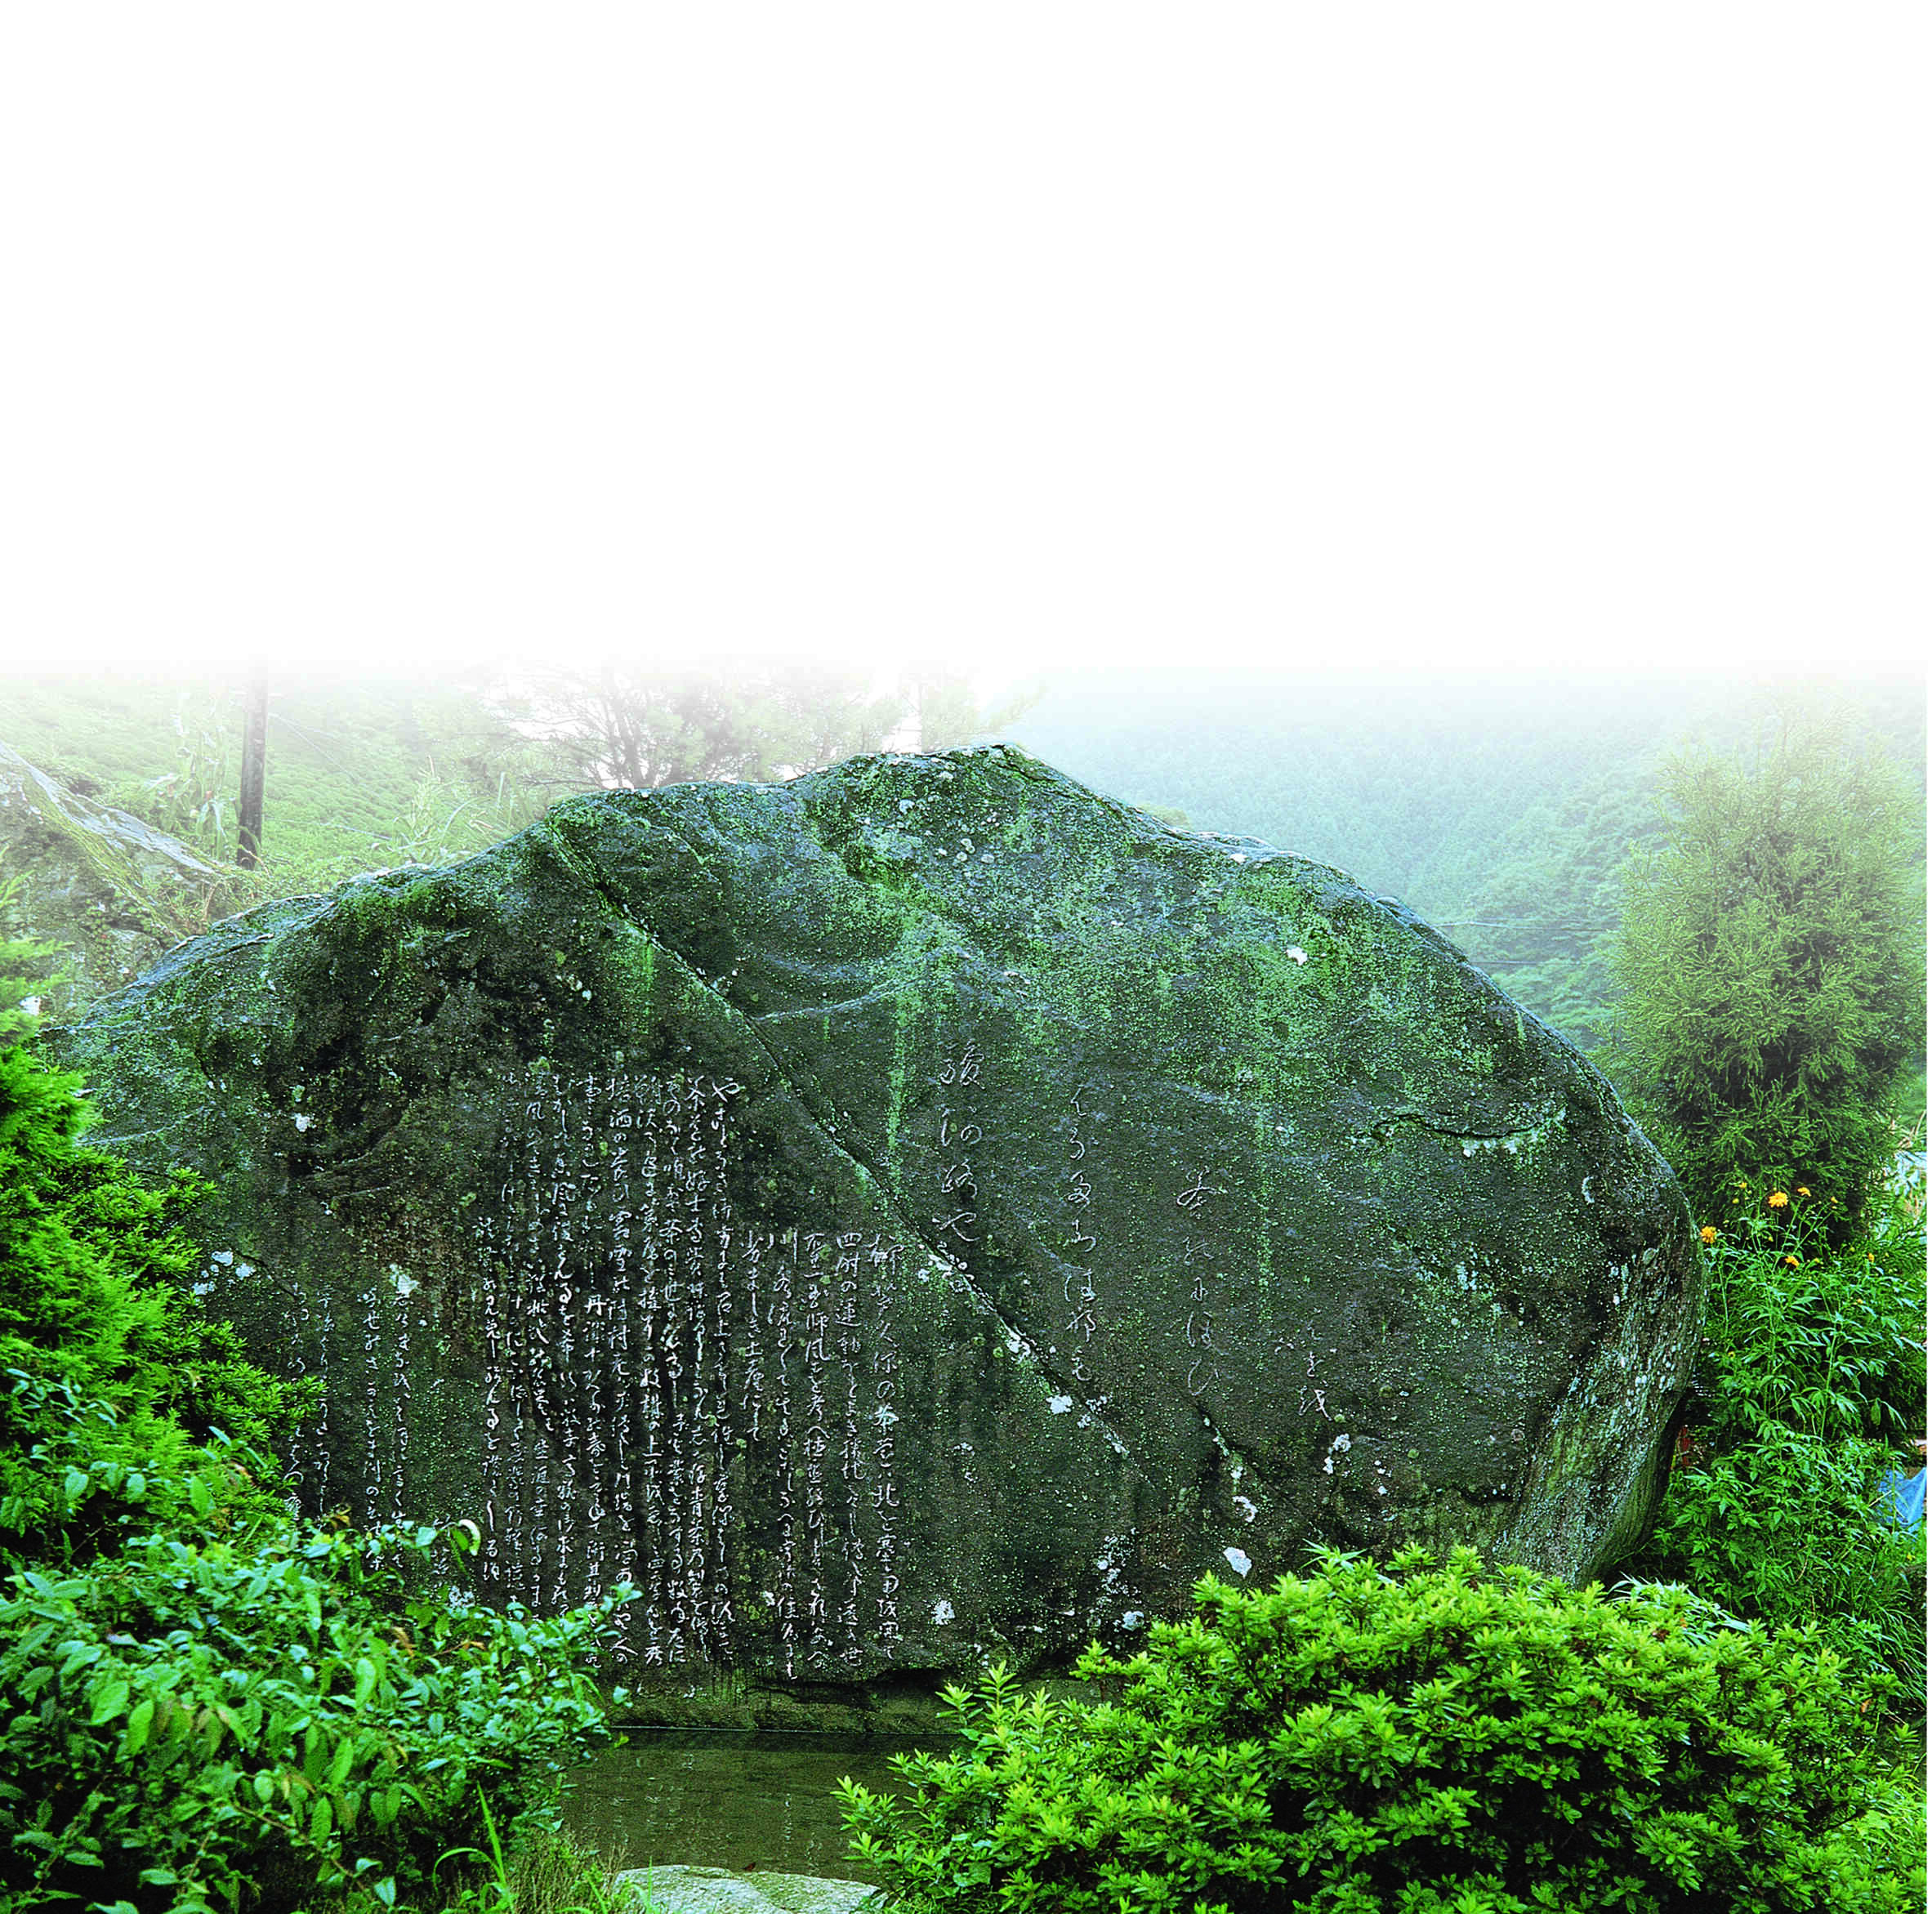 狐石は、初代竹茗が静岡市葵区足久保に茶栽培の成功を記念した石碑